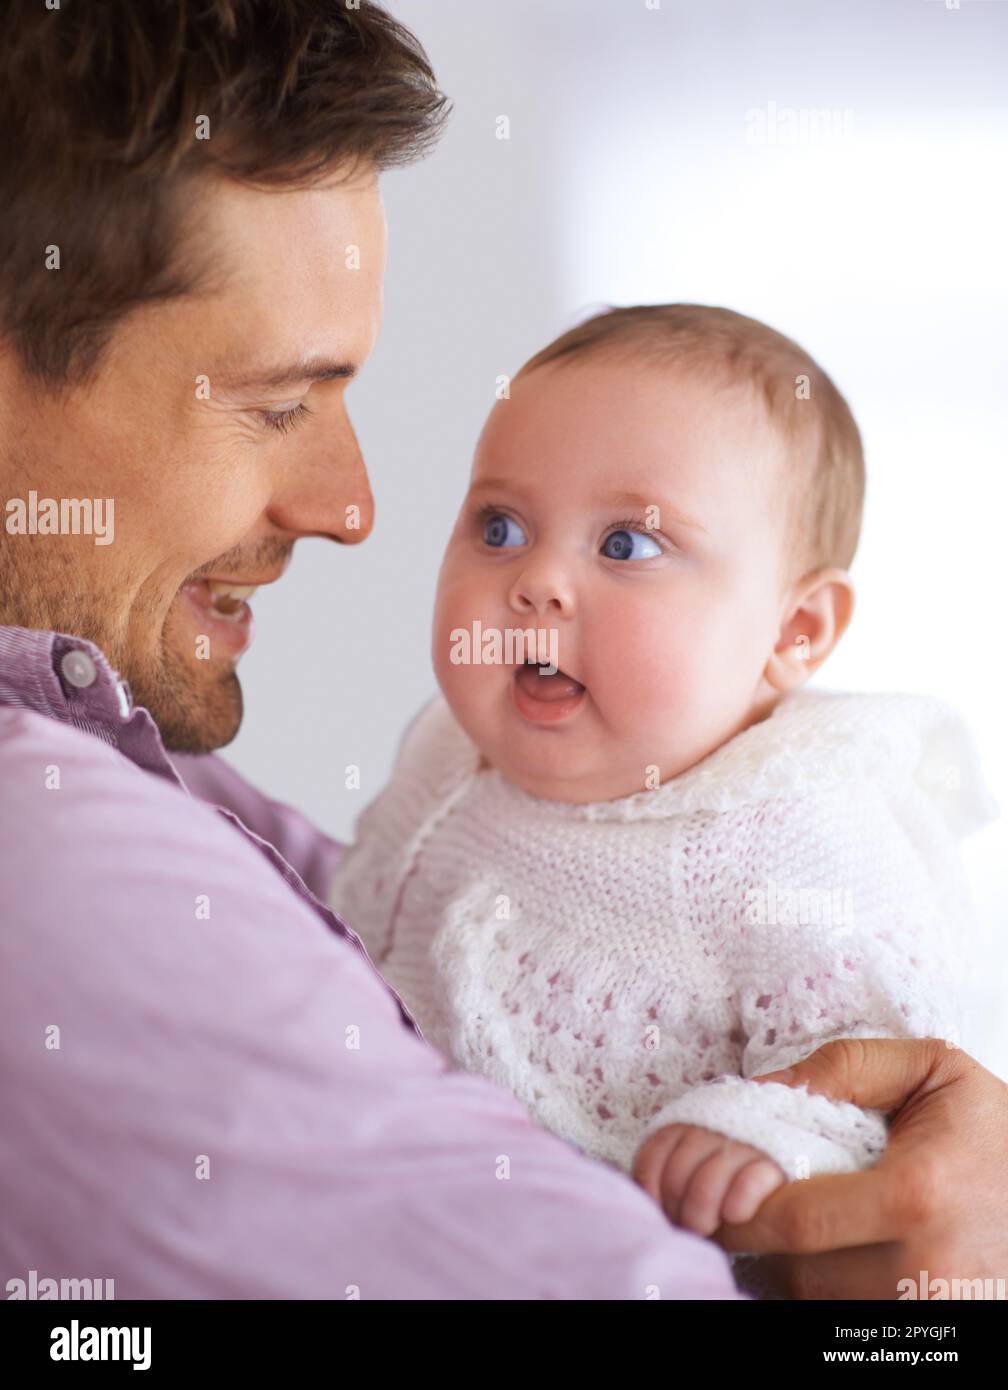 Eine Beziehung zum Baby aufbauen. Ein junger Vater, der sein süßes Mädchen hält. Stockfoto